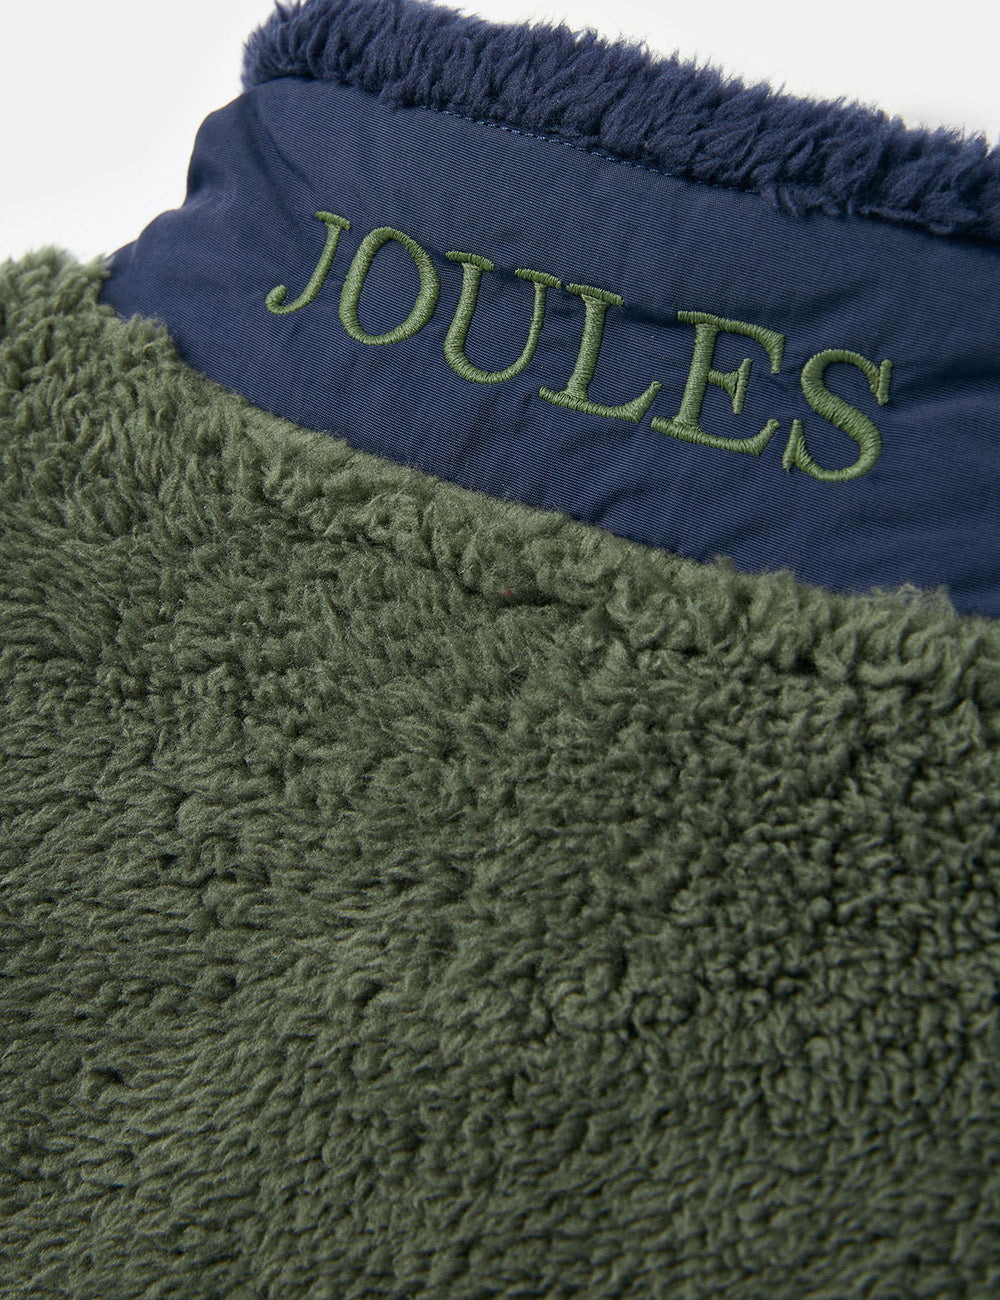 Joules Always Cosy 1/Z Zip Fleece - Seaweed Colourblock